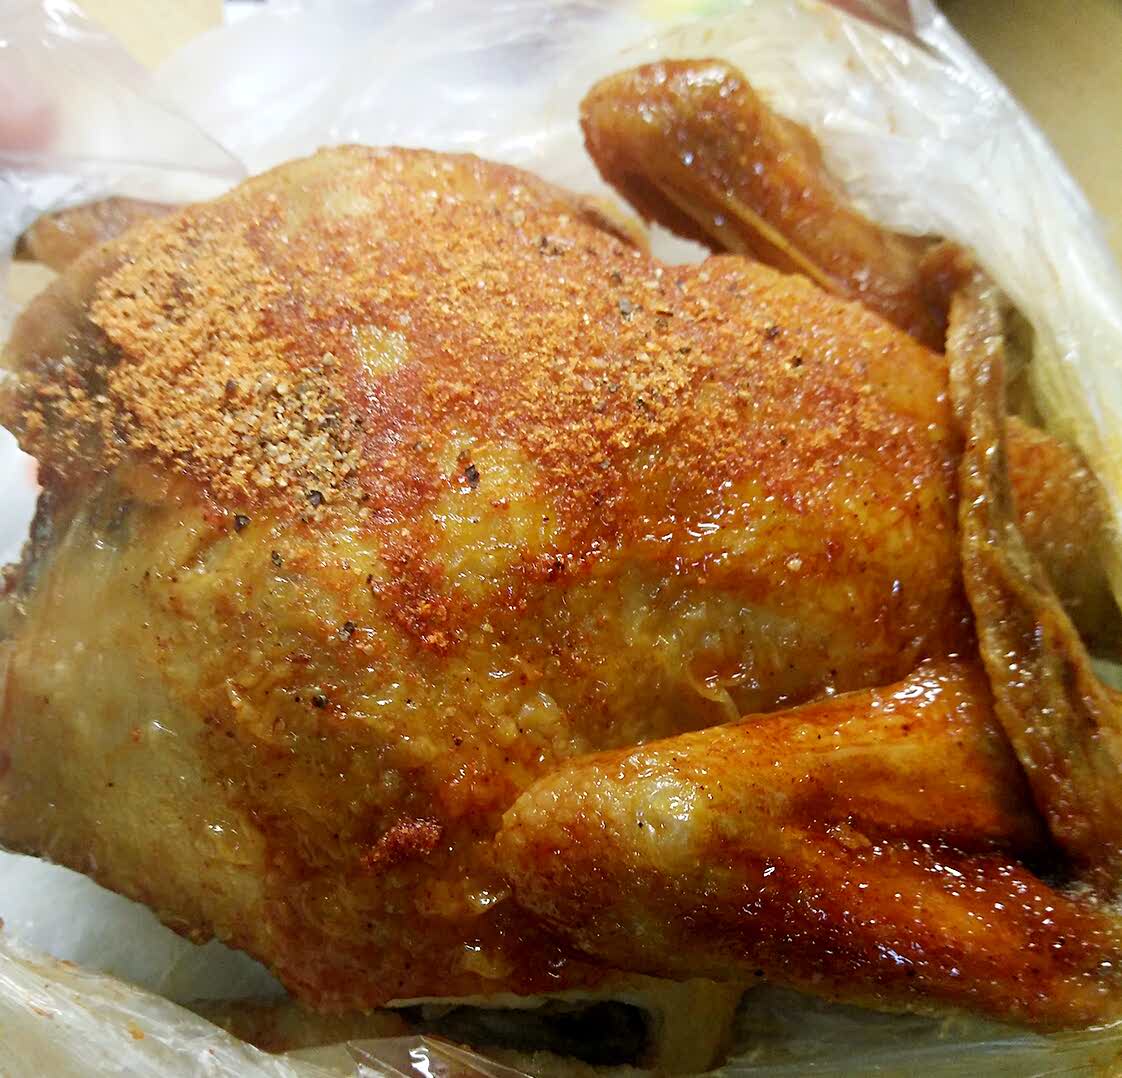 【携程美食林】扬州华莱士炸鸡汉堡(四望亭路店)餐馆,蜜汁手扒鸡好像